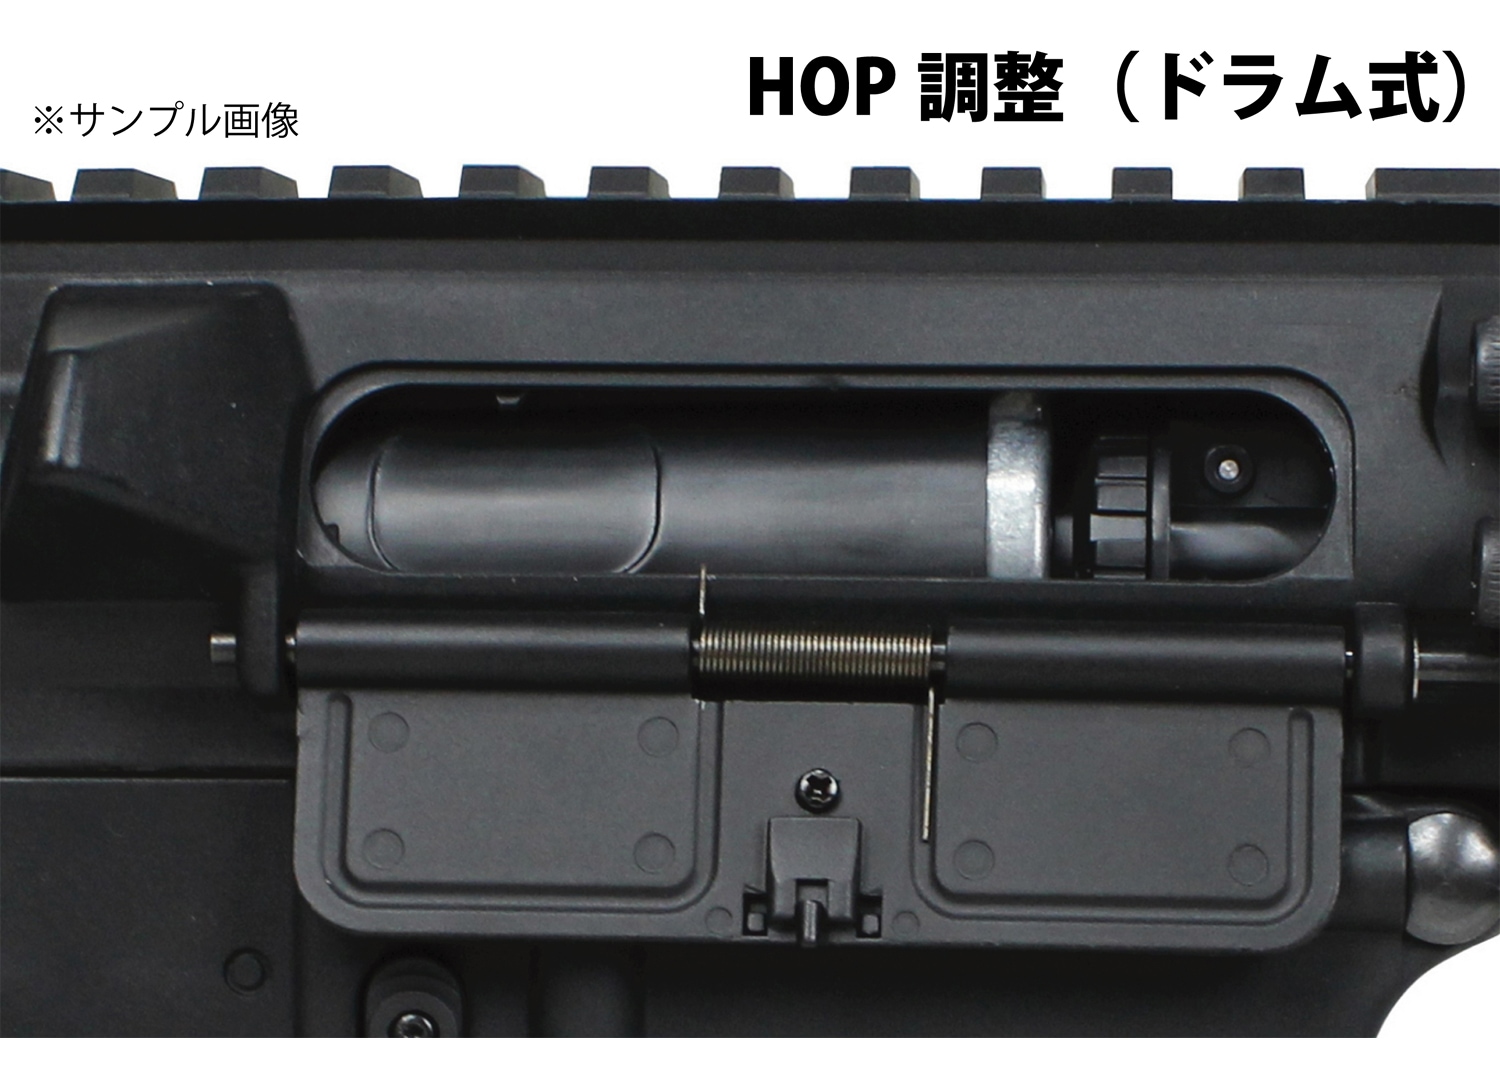 フォースターBOX】S&T M4 URX4 M-LOK 9.5インチ チャレンジャーライン